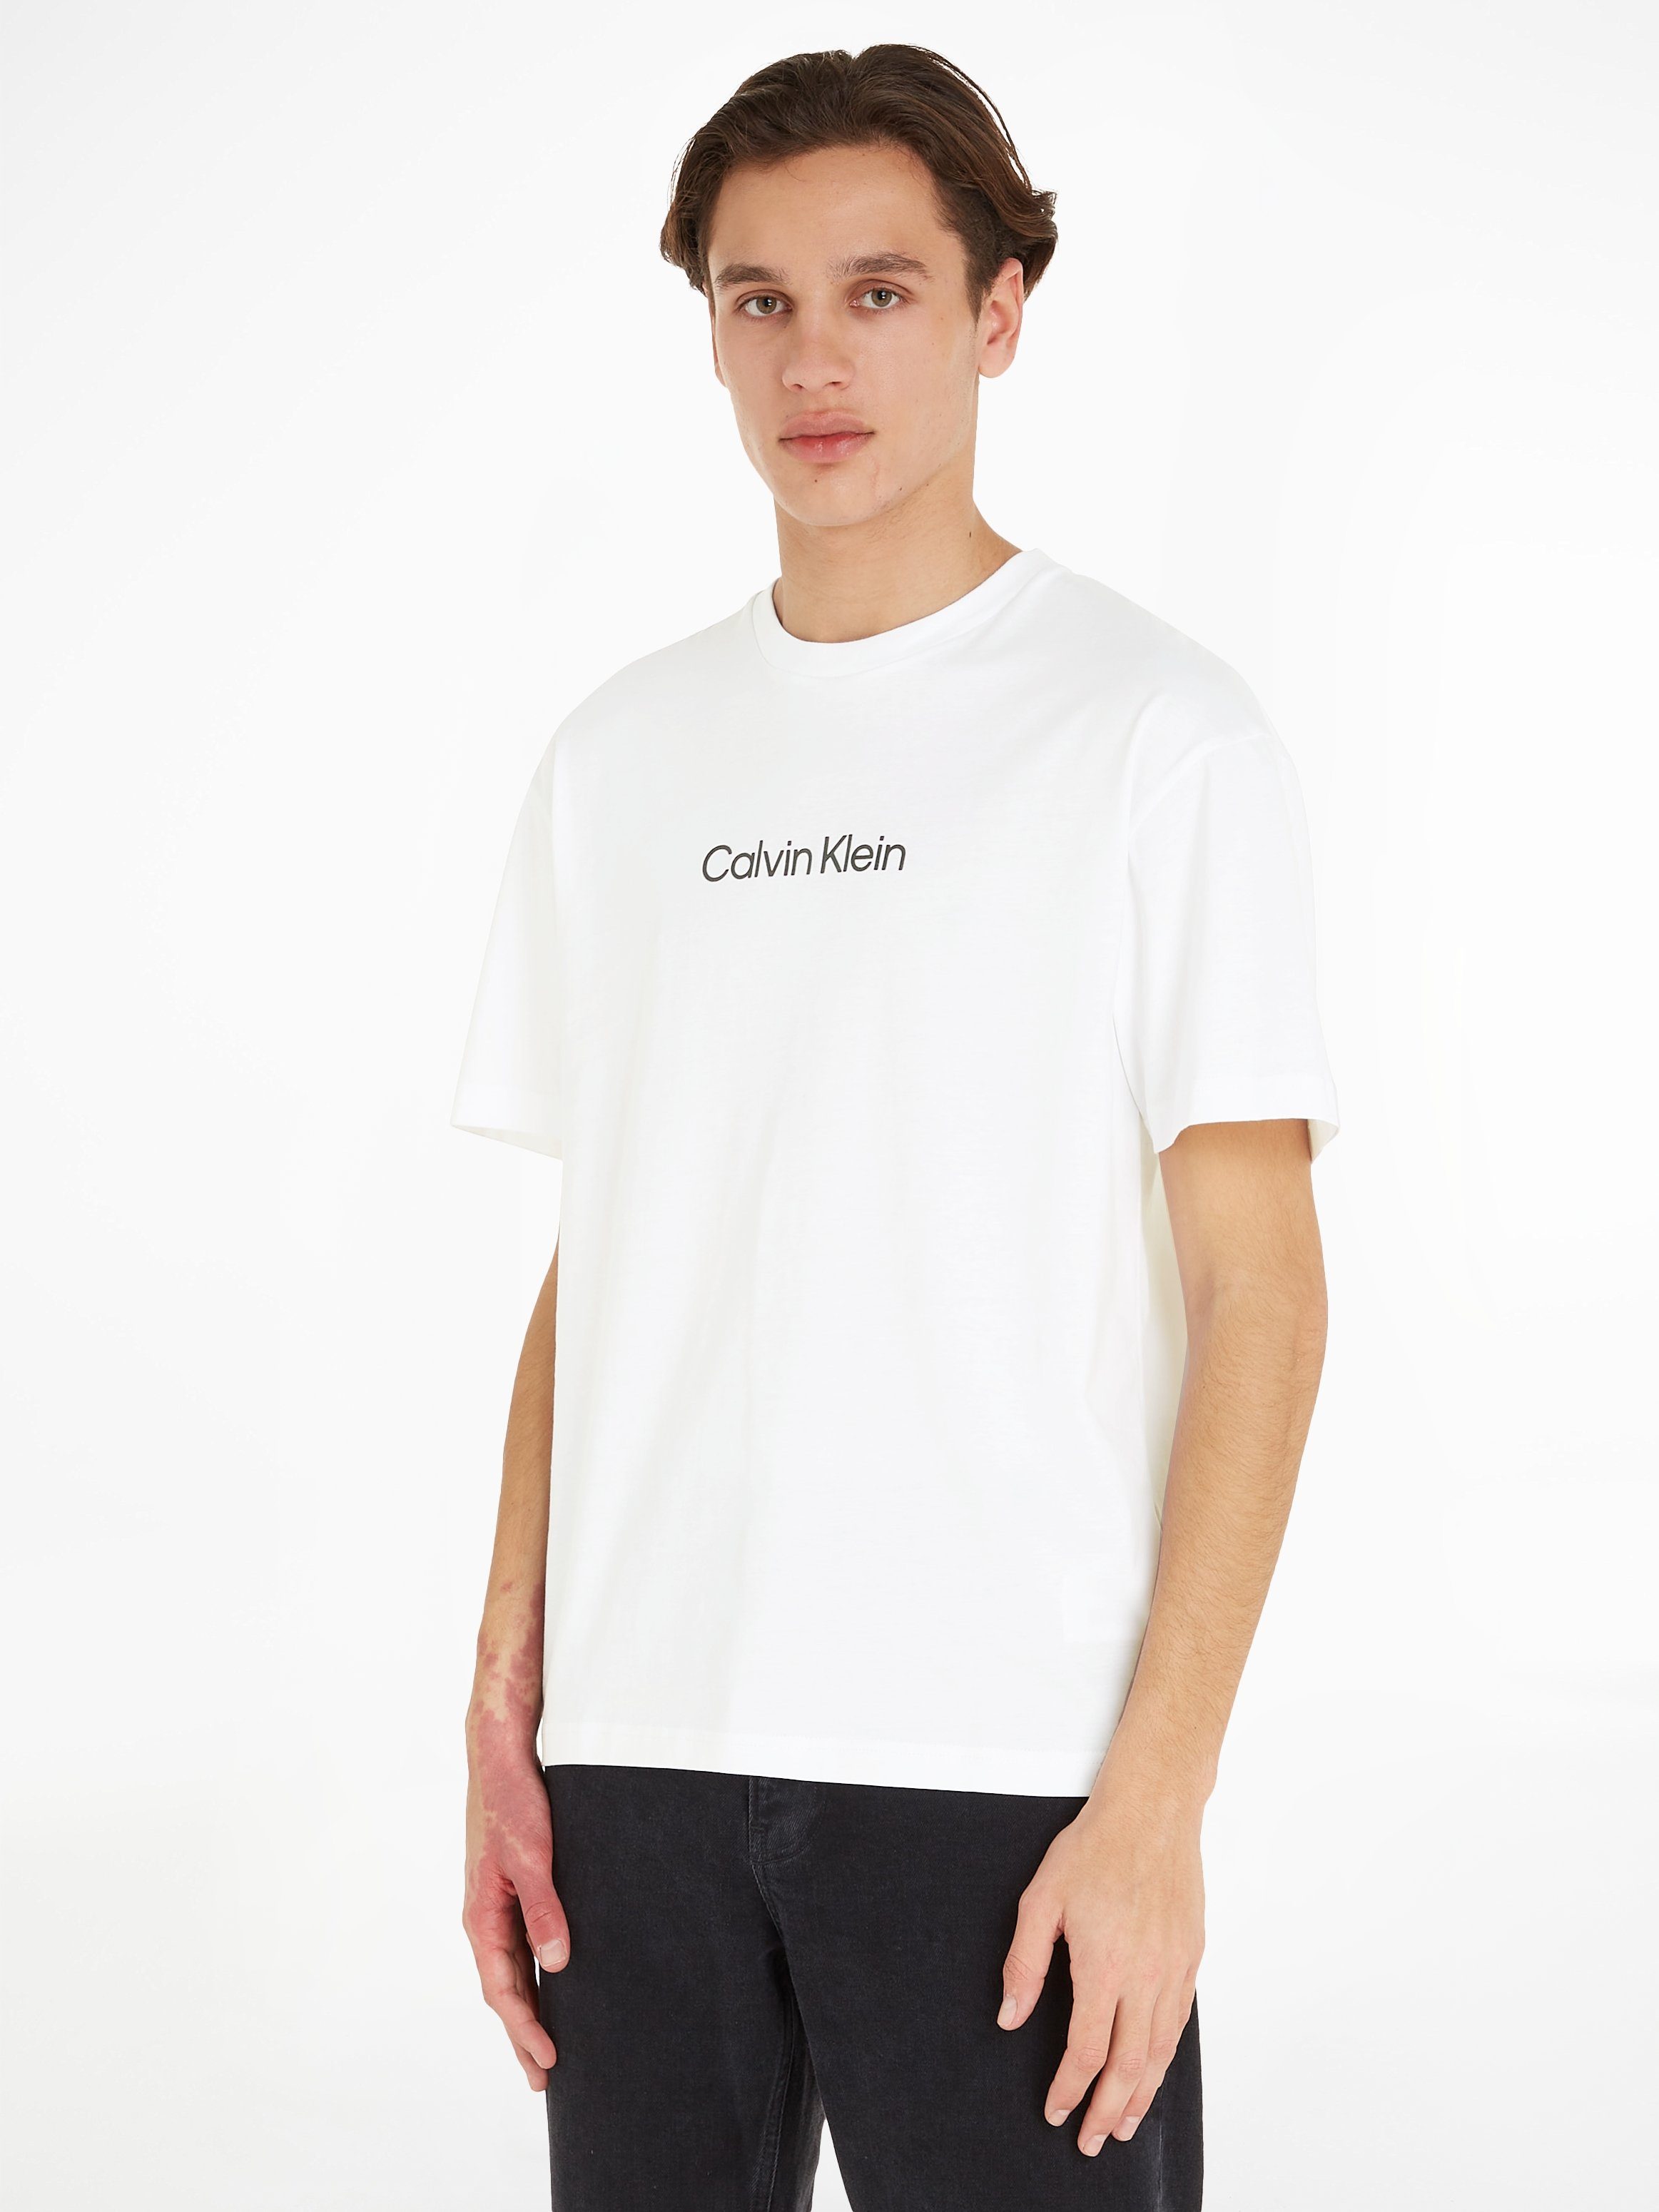 Calvin Klein T-Shirt HERO LOGO mit Bright aufgedrucktem White T-SHIRT Markenlabel COMFORT